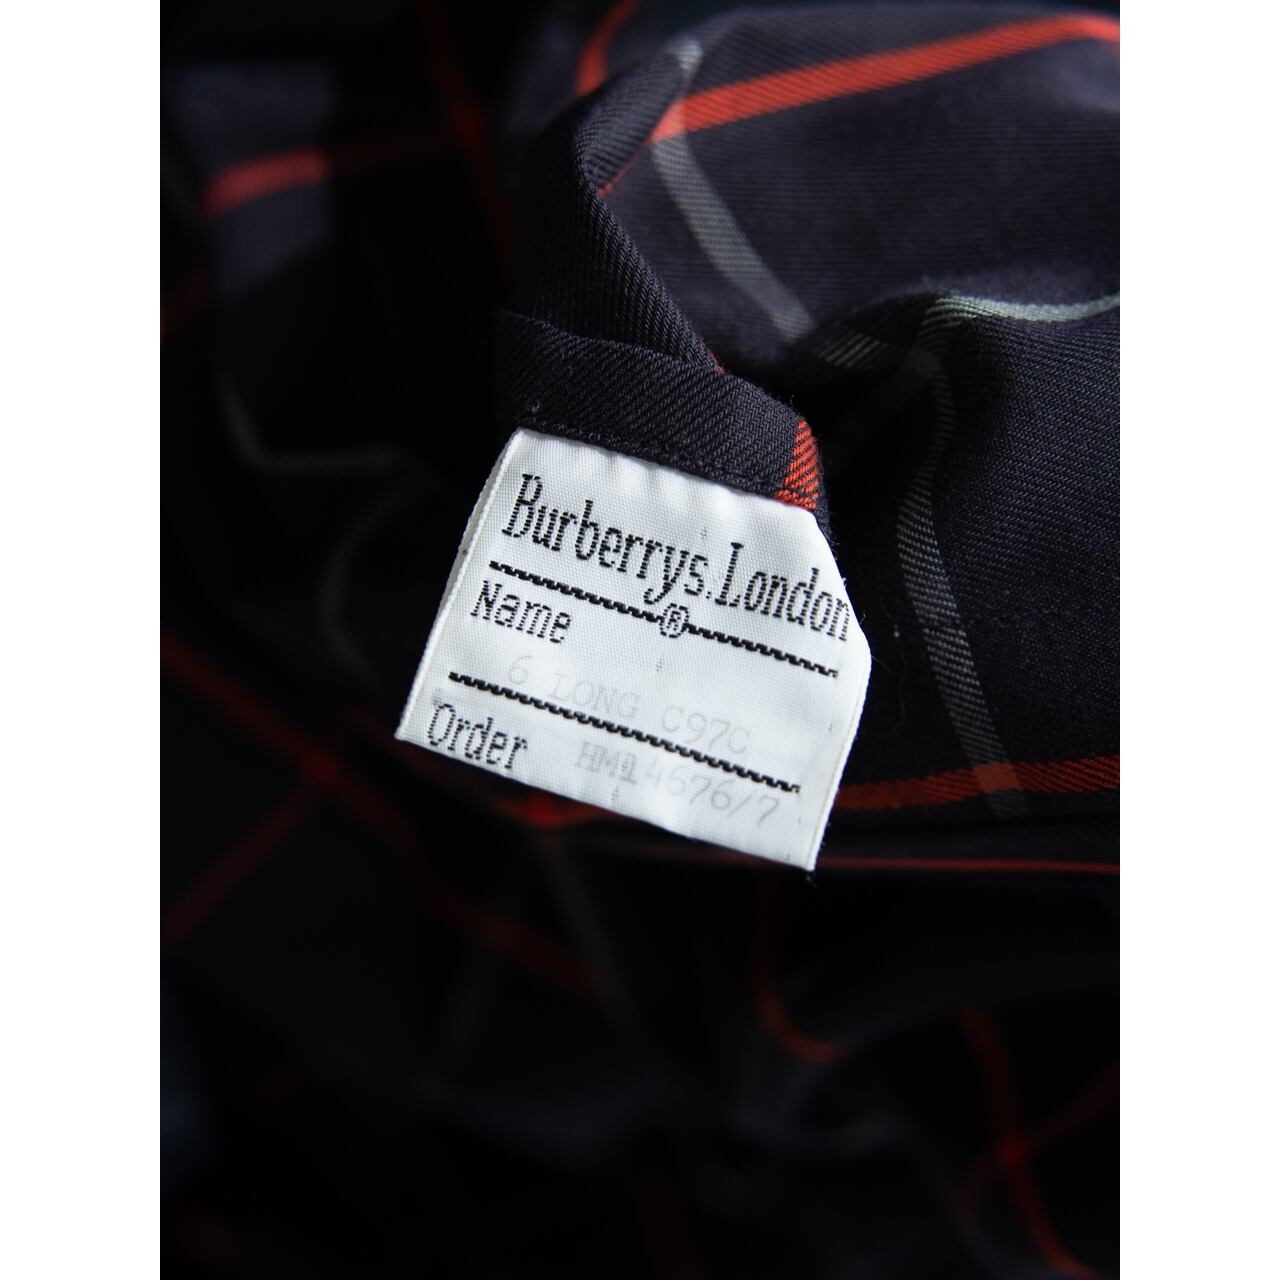 Burberrys】Made in England 90's balmacaan coat soutien collar